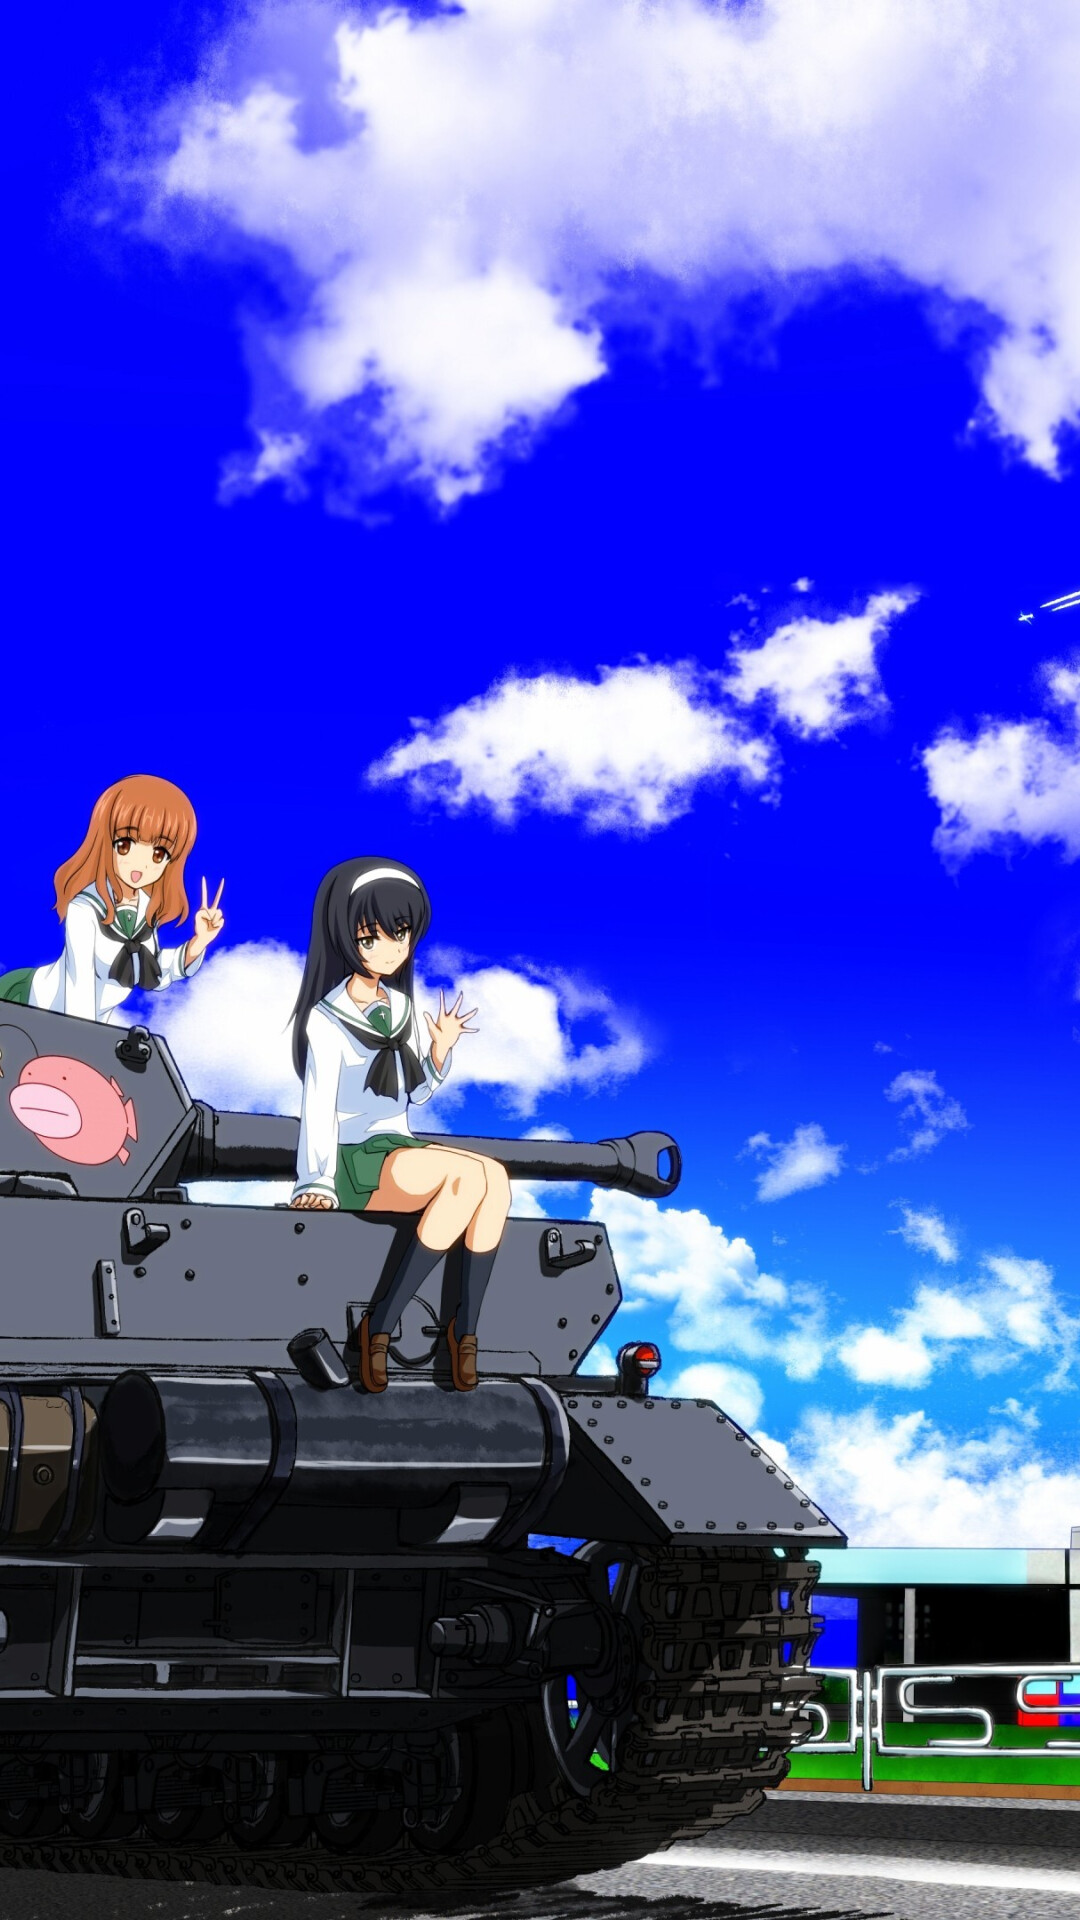 Girls und Panzer: Anglerfish Team, Saori Takebe, The radio and machine gun operator, Mako Reizei, Panzer IV. 1080x1920 Full HD Background.